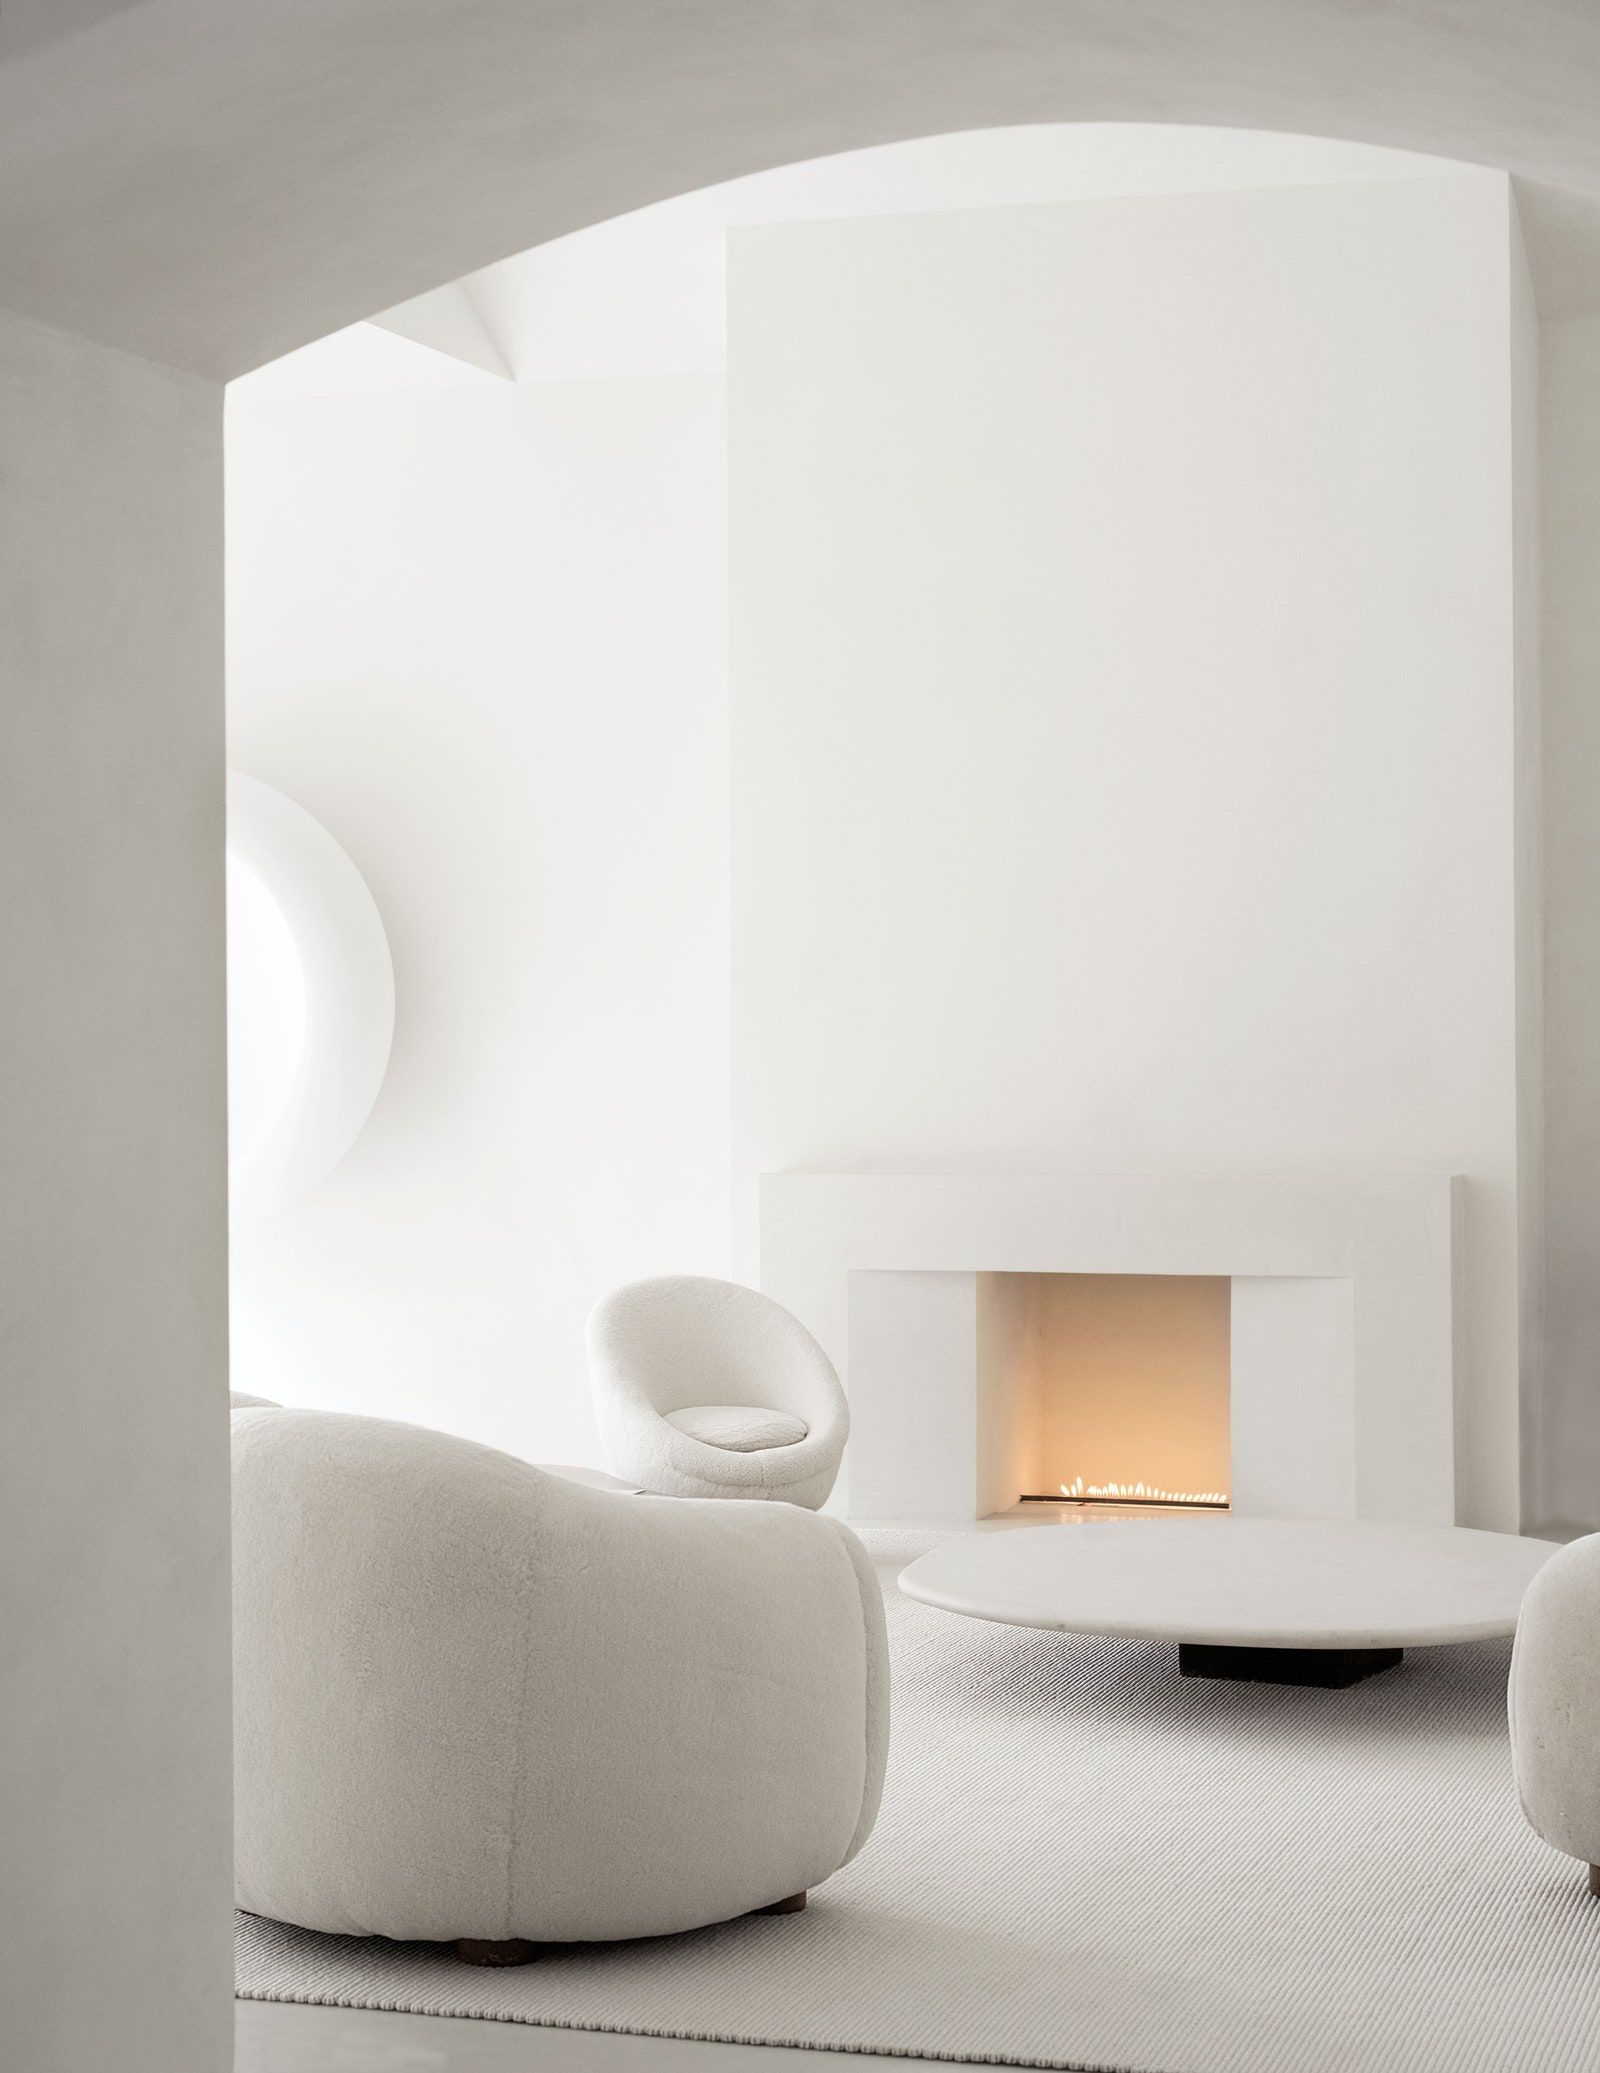 Каминная зона в гостиной. Кресла по дизайну Royère столик из песчаника — работа Акселя Вервордта.